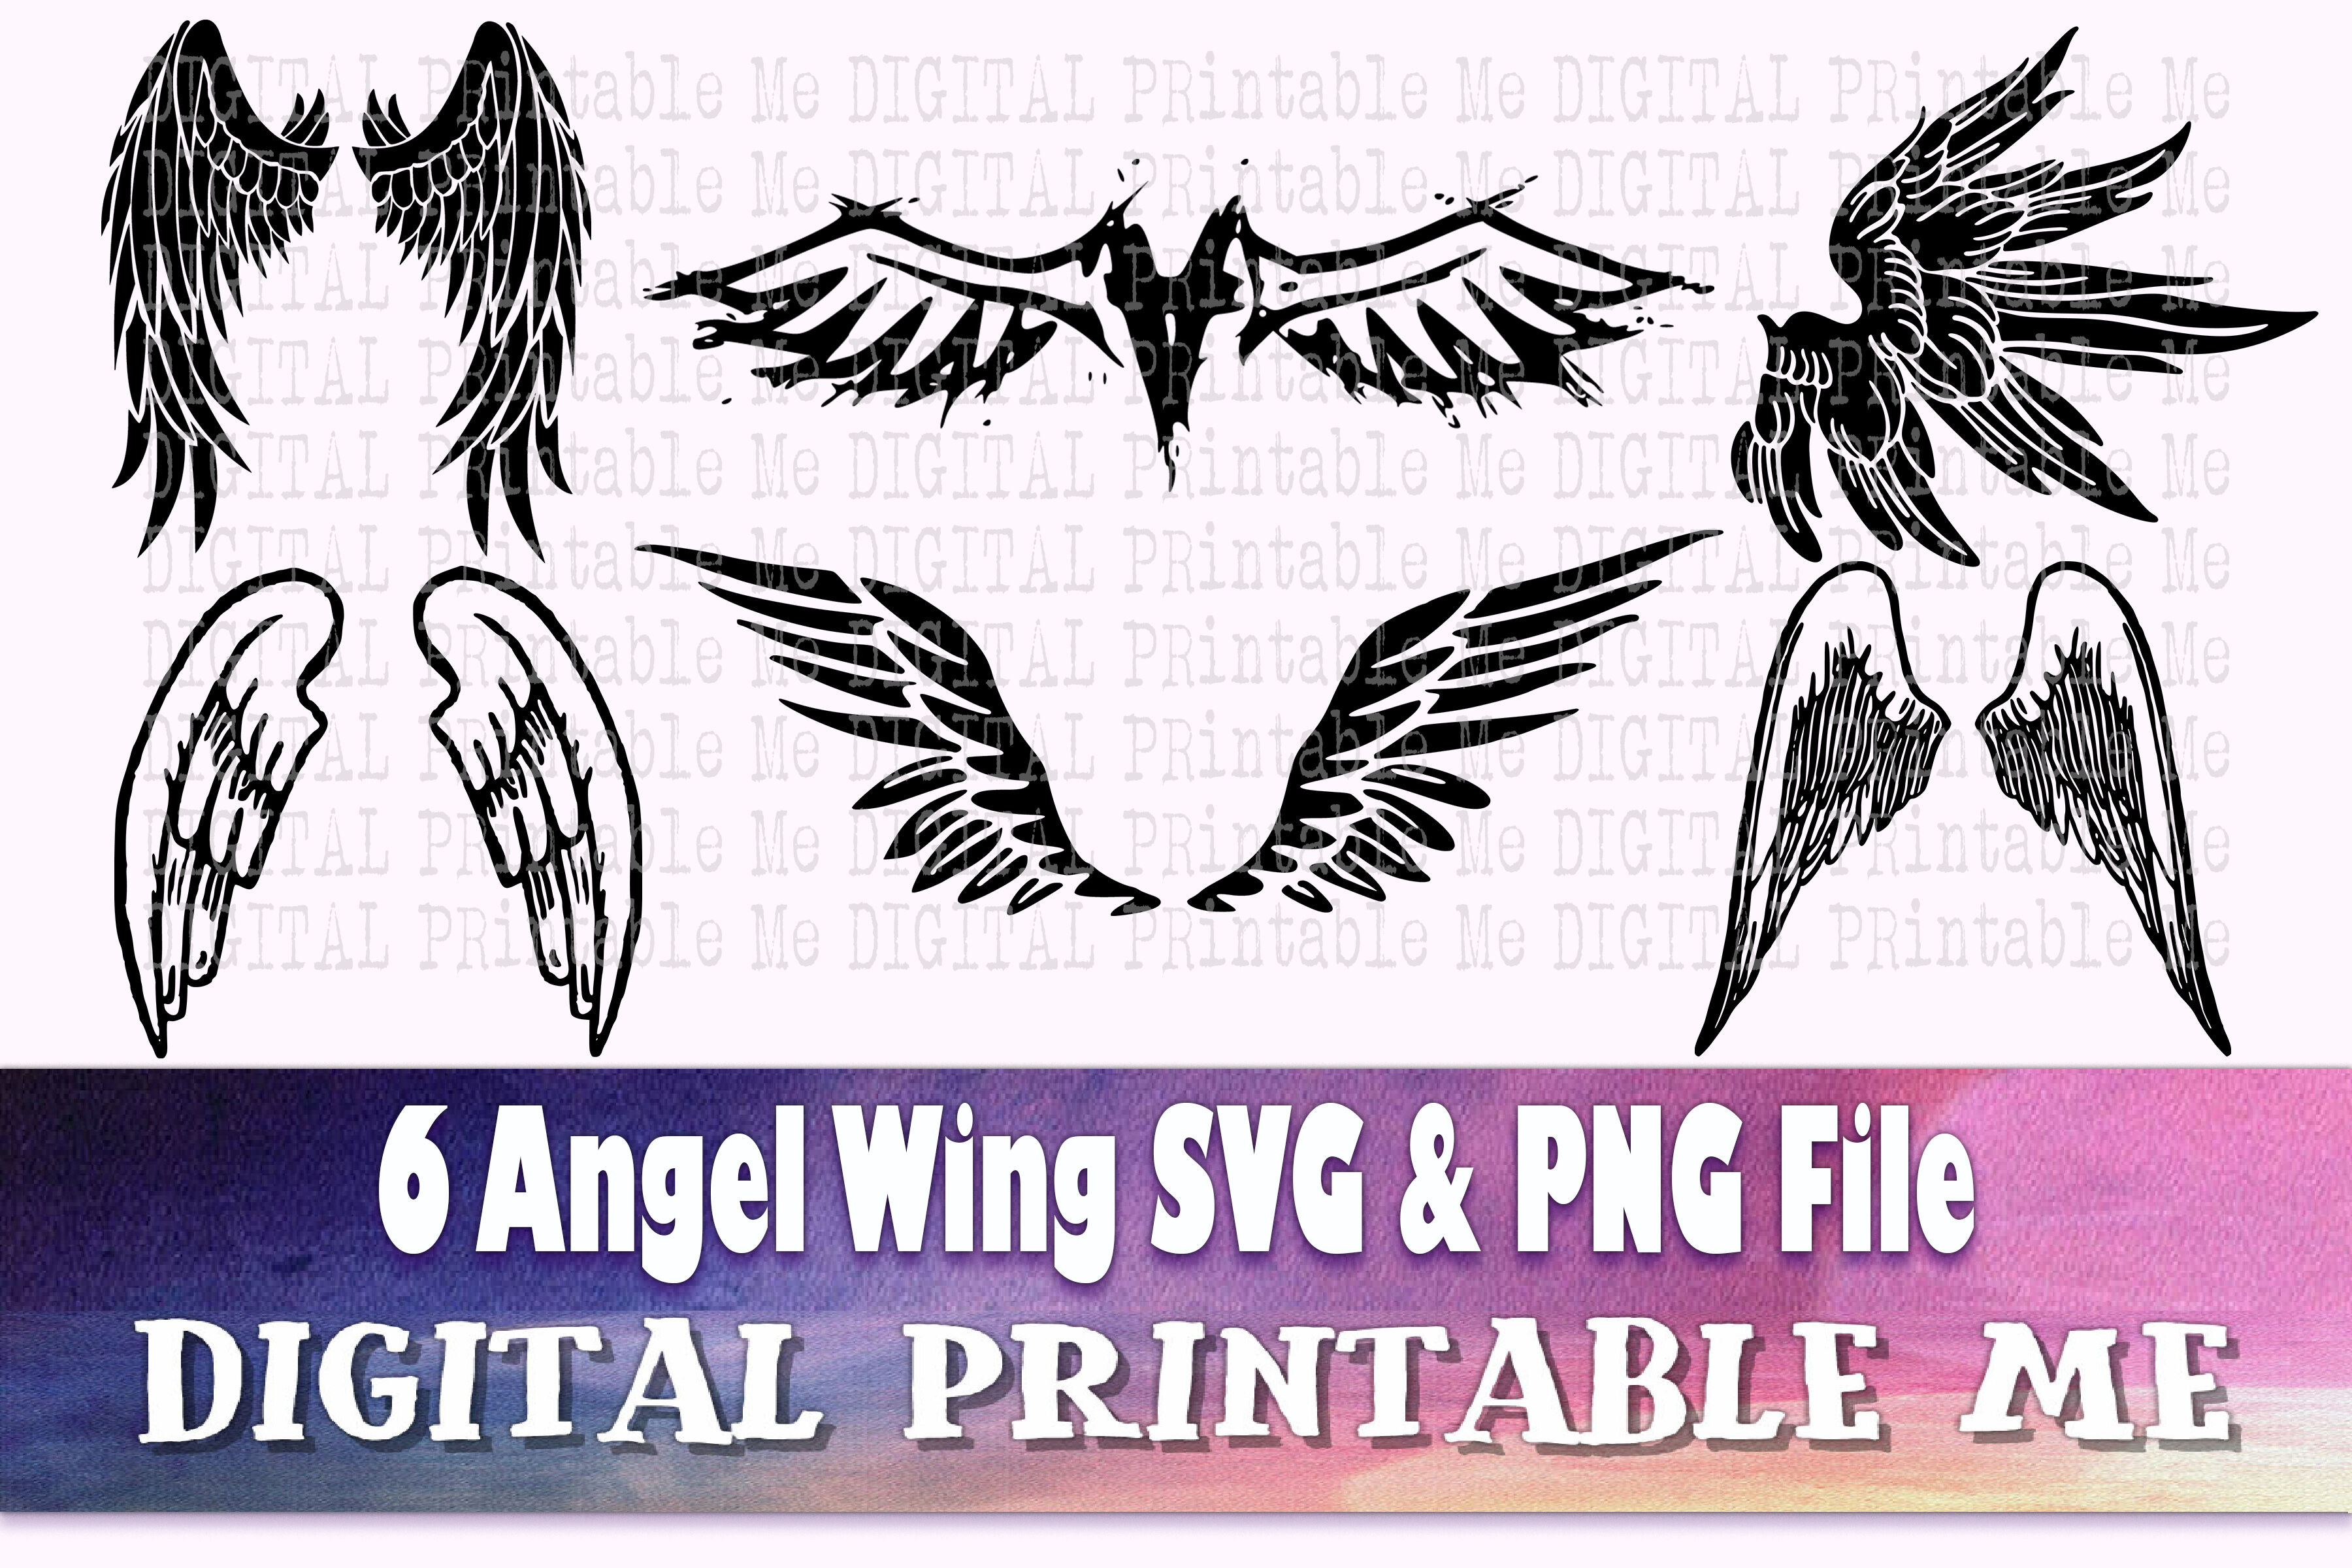 simple angel wings silhouette